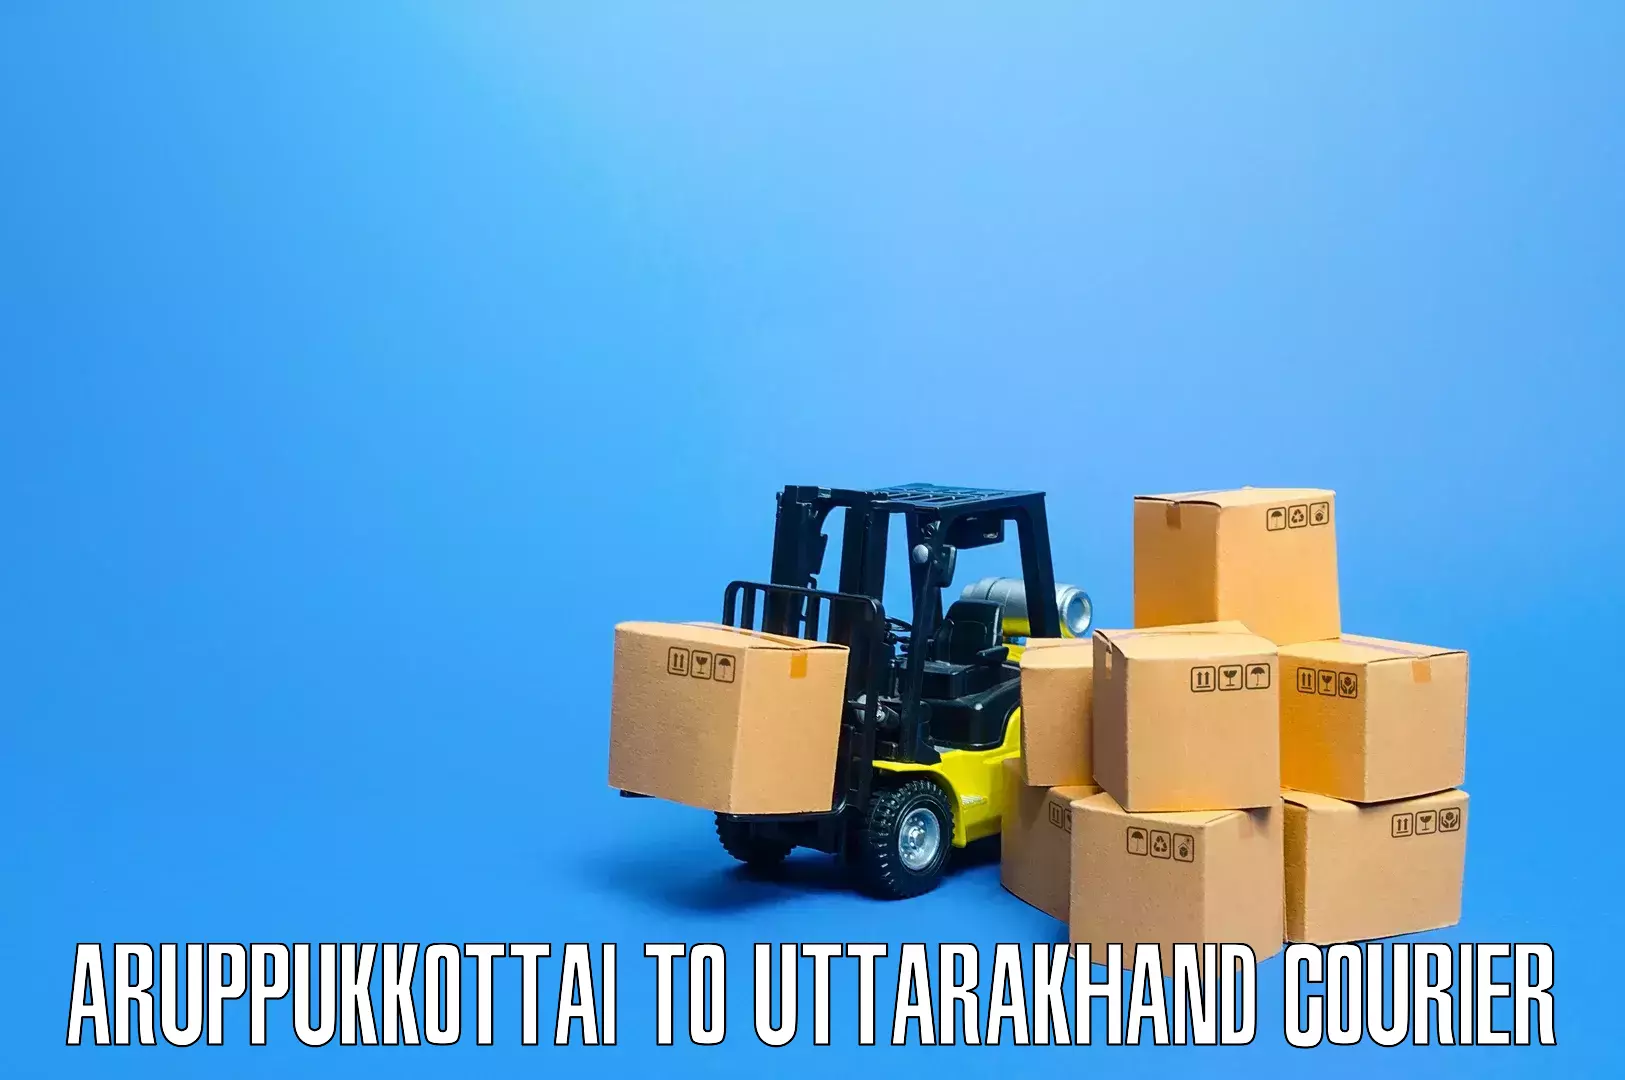 Furniture logistics Aruppukkottai to Tanakpur